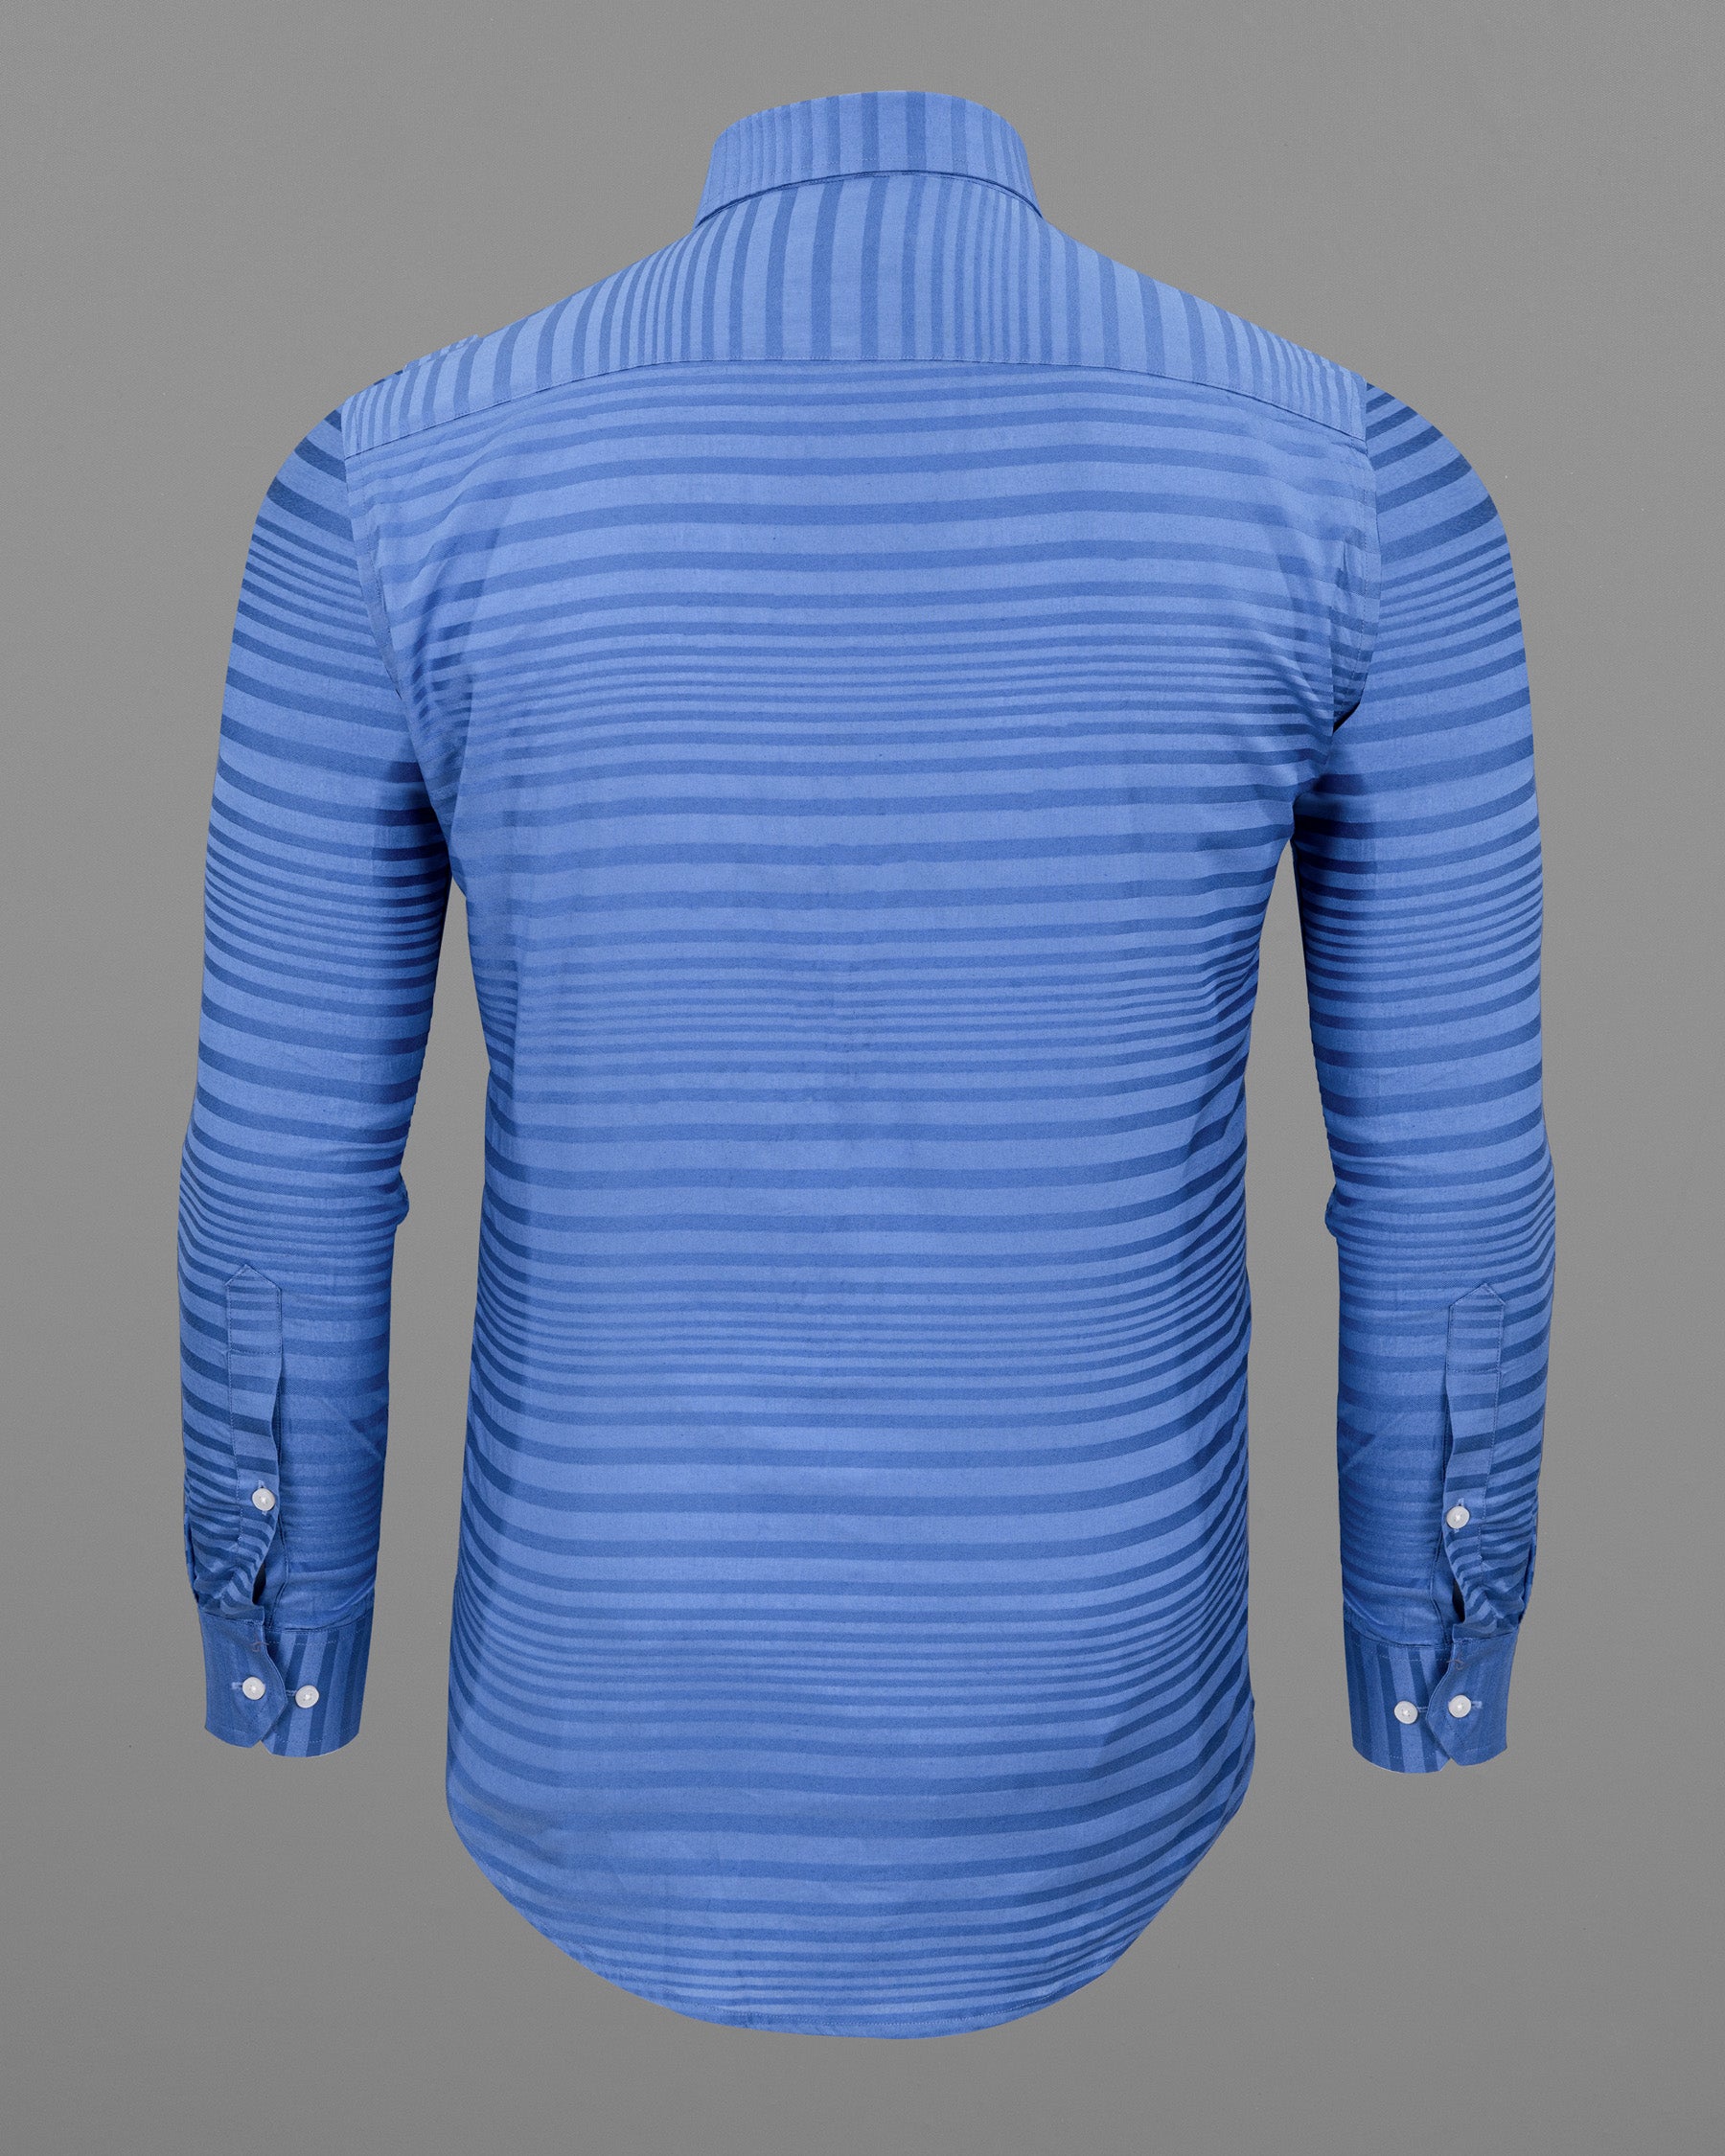 Endeavour Blue Striped Dobby Textured Premium Giza Cotton Shirt 5533-38, 5533-H-38, 5533-39, 5533-H-39, 5533-40, 5533-H-40, 5533-42, 5533-H-42, 5533-44, 5533-H-44, 5533-46, 5533-H-46, 5533-48, 5533-H-48, 5533-50, 5533-H-50, 5533-52, 5533-H-52